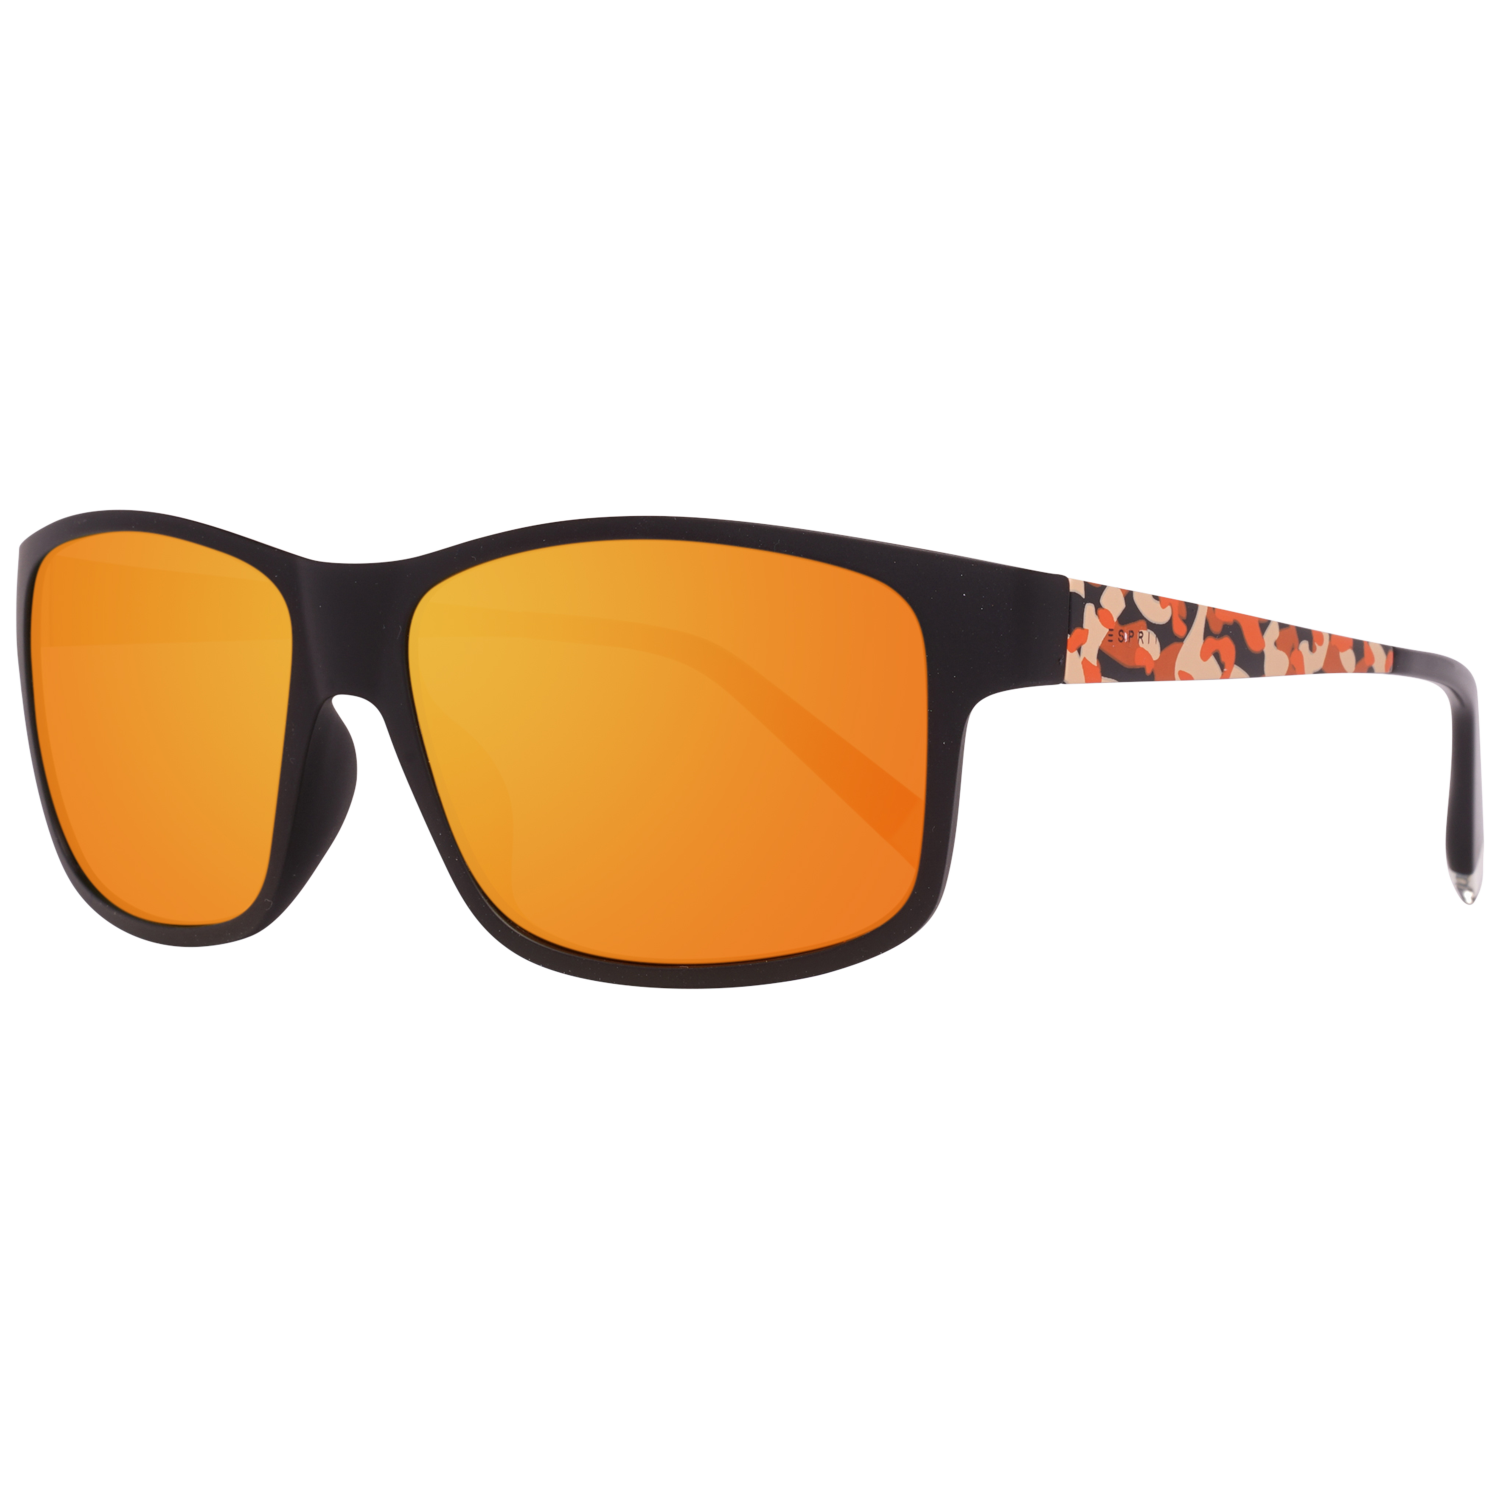 Esprit Sunglasses ET17893 555 57 Black